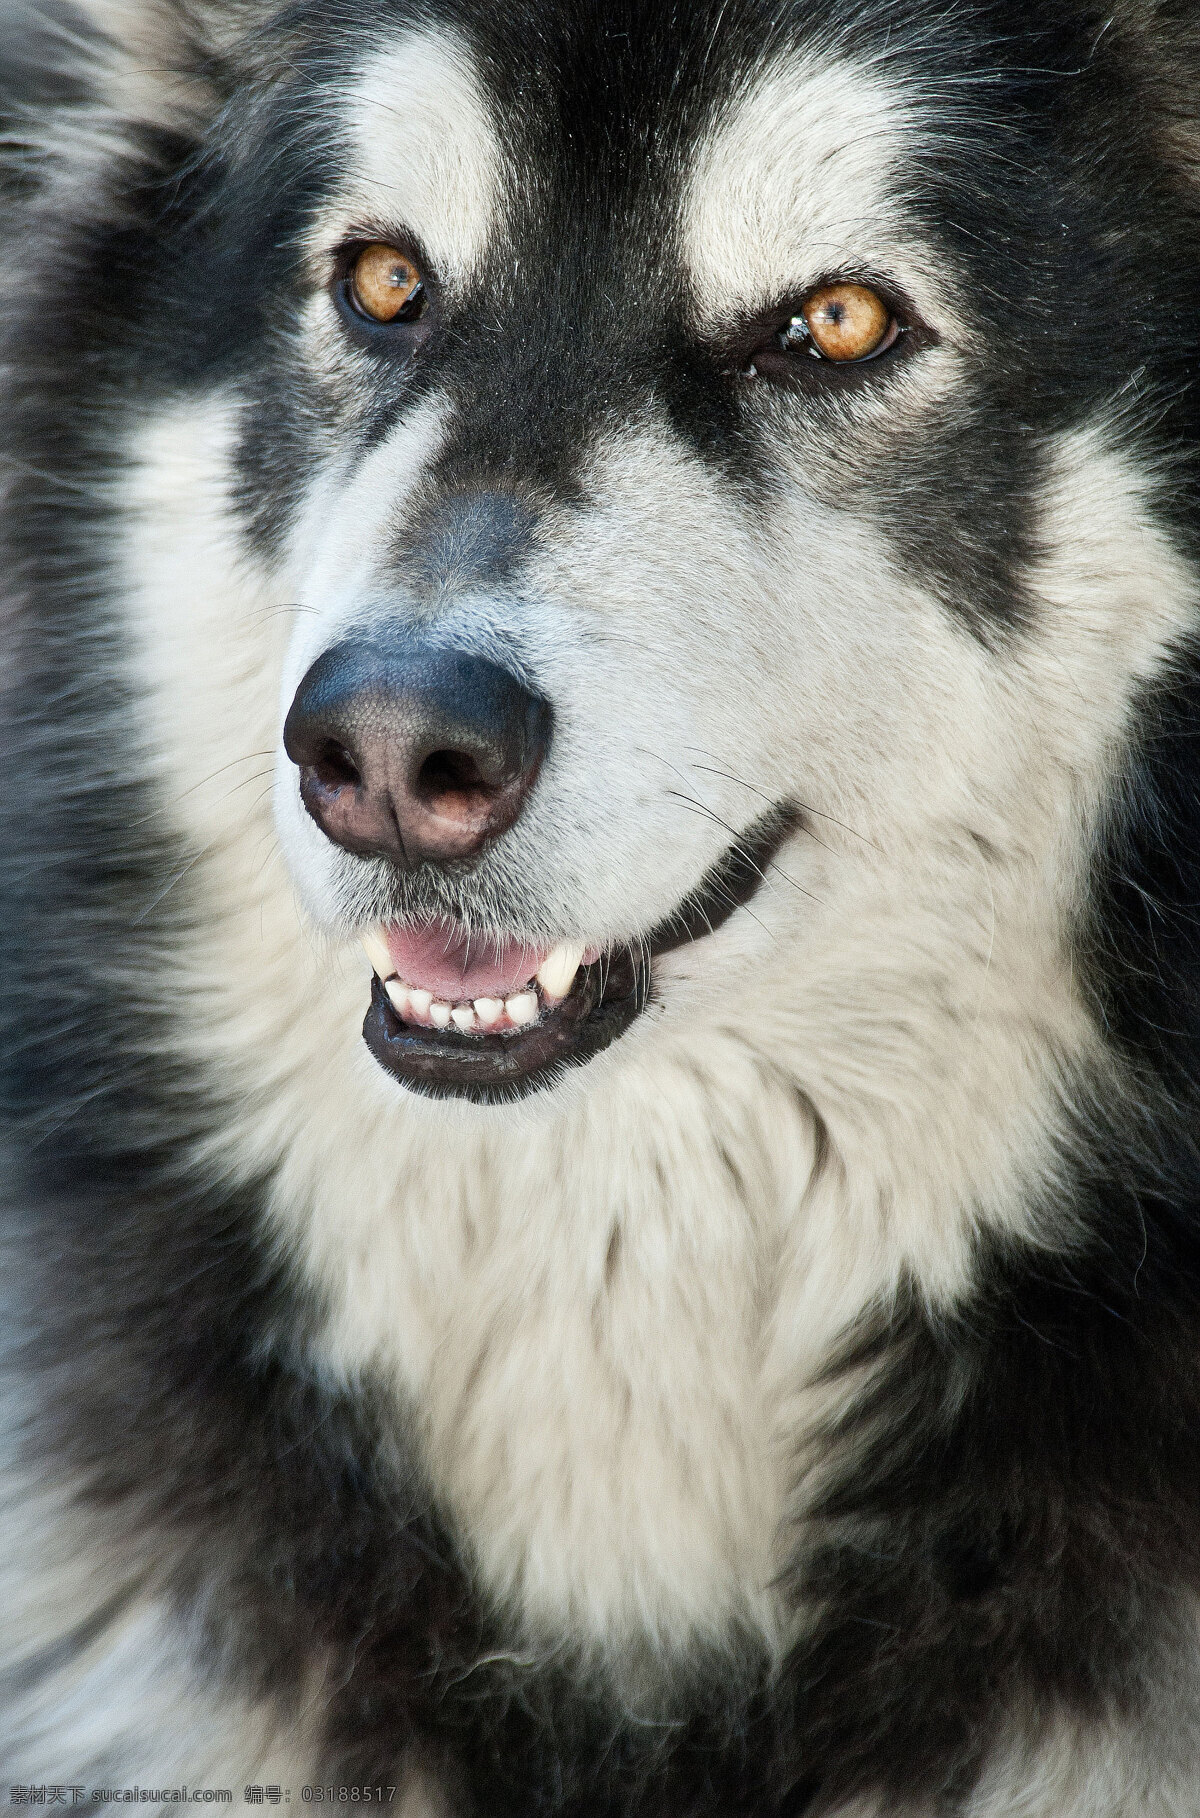 阿拉斯加 雪橇 犬 雪橇犬 宠物狗 大型犬 净脸 家禽家畜 生物世界